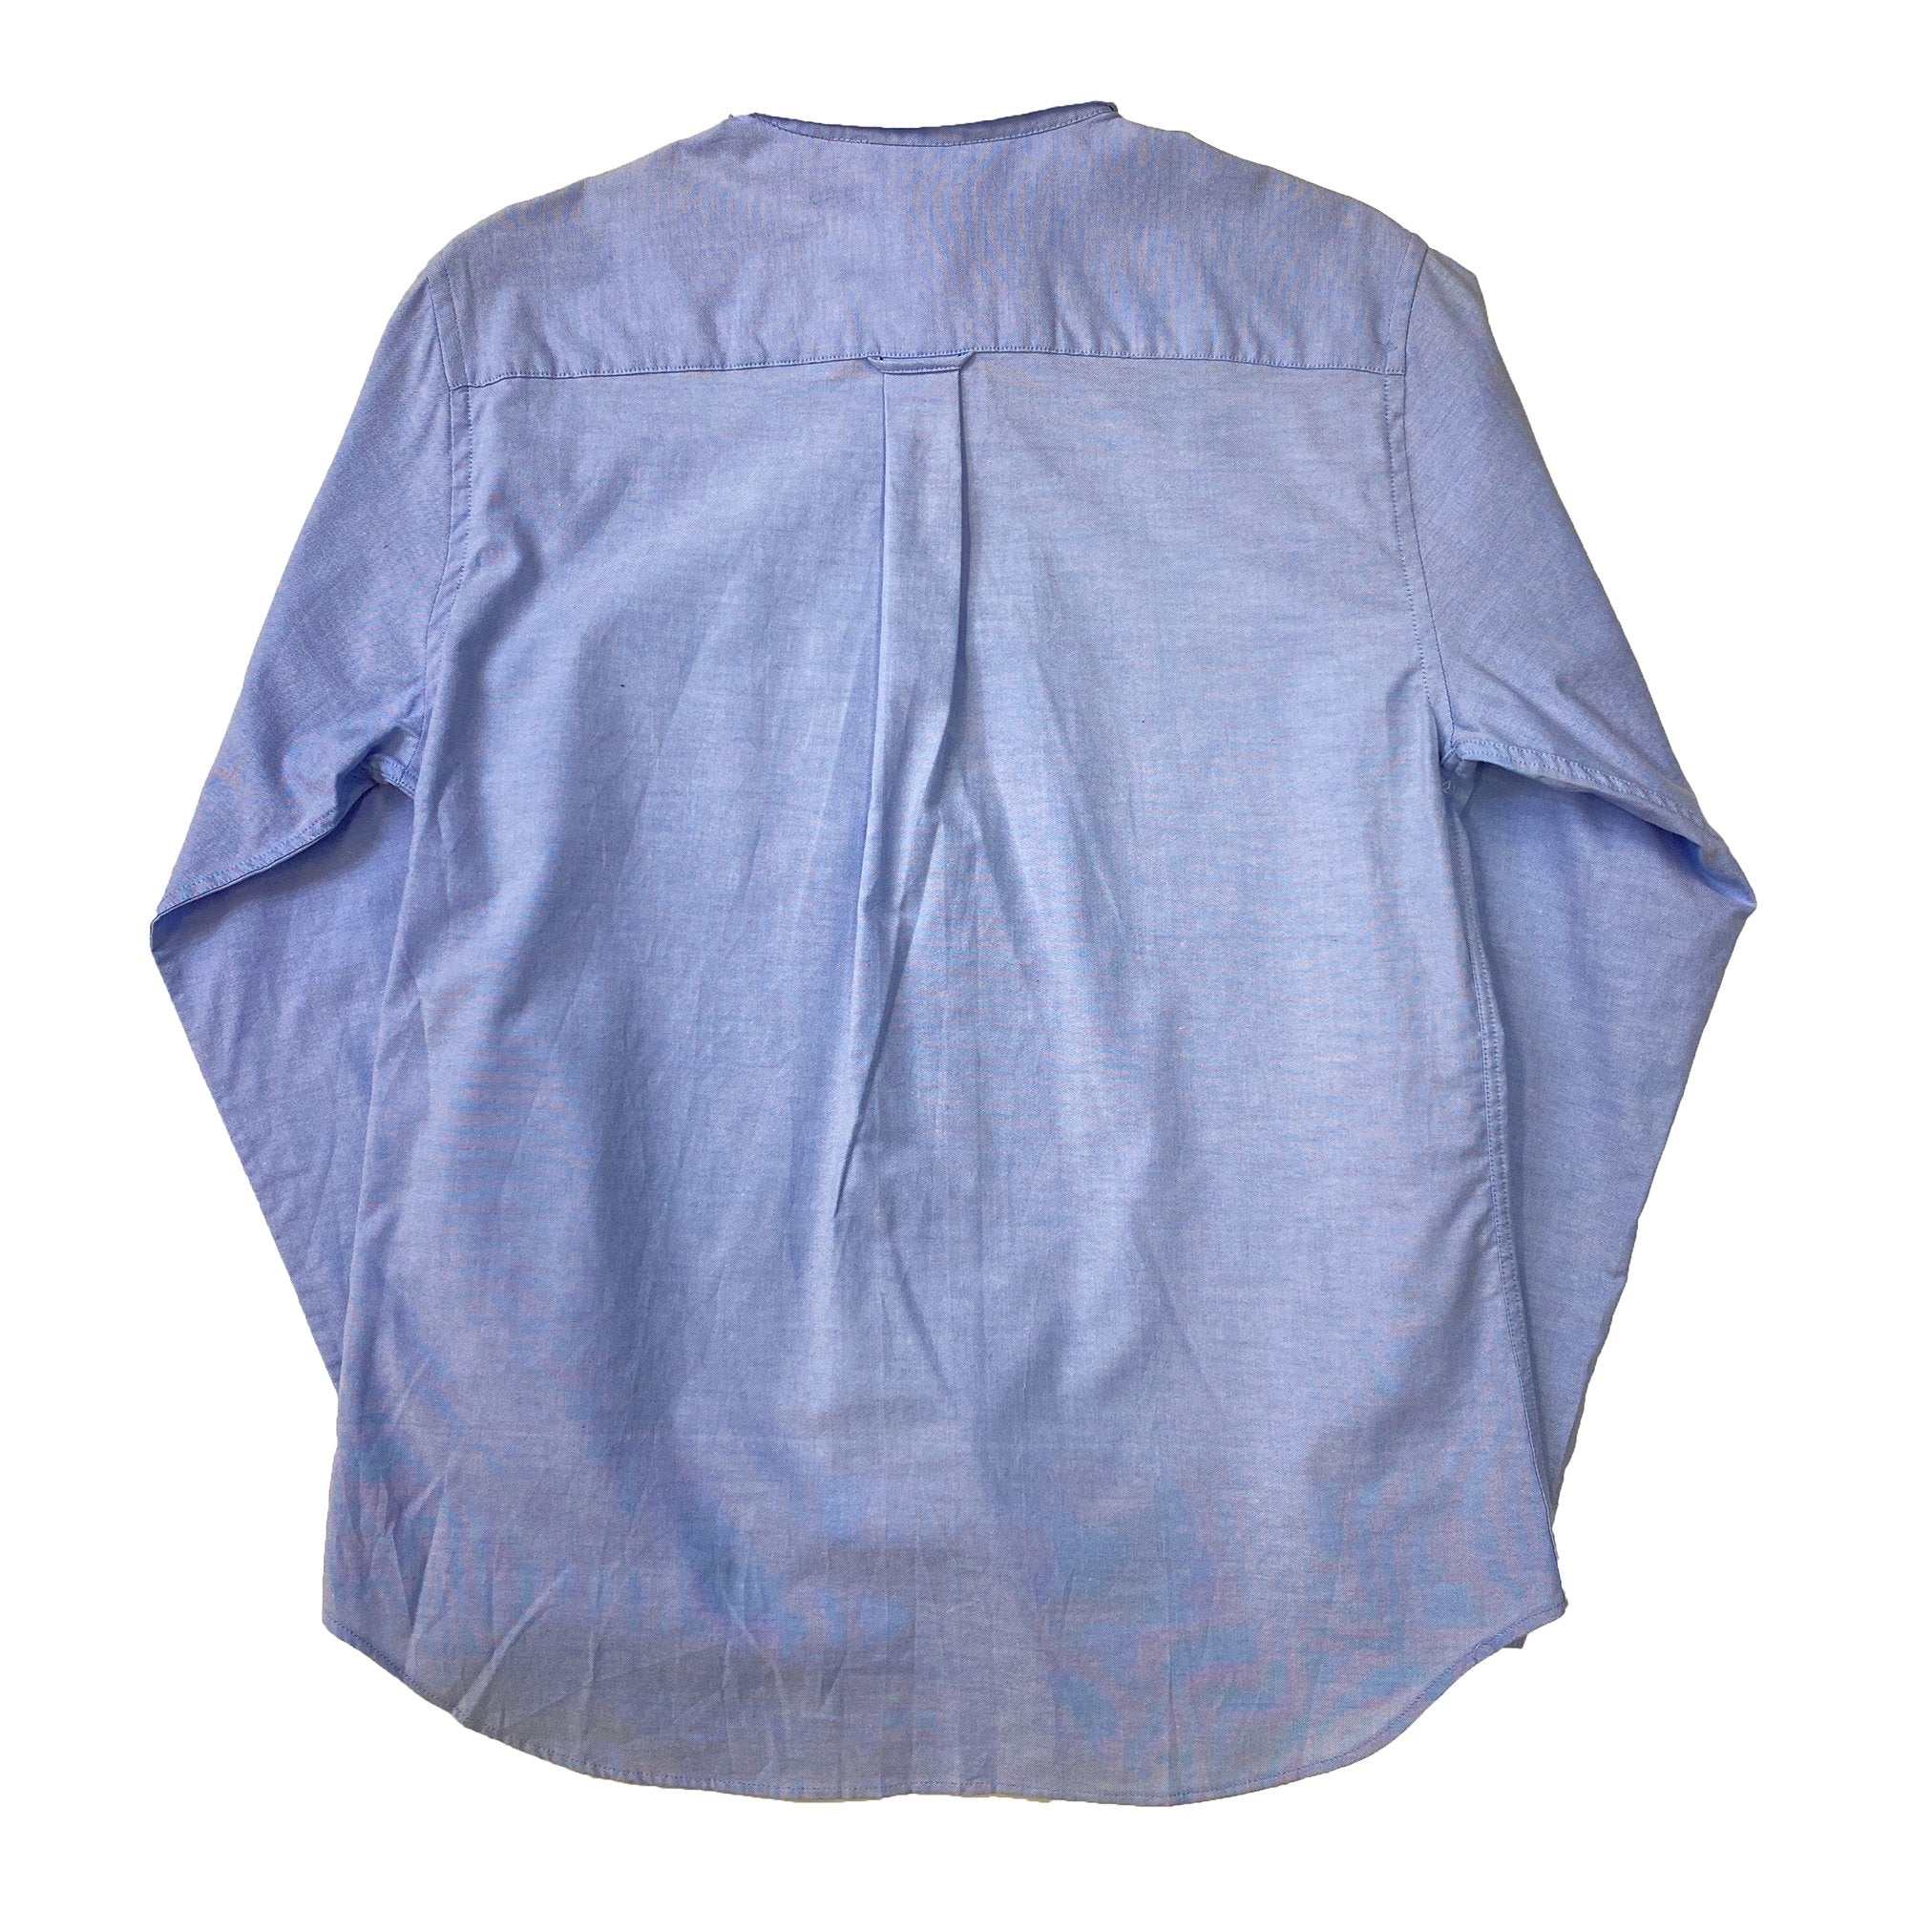 Westbound Light Blue Button-up Shirt